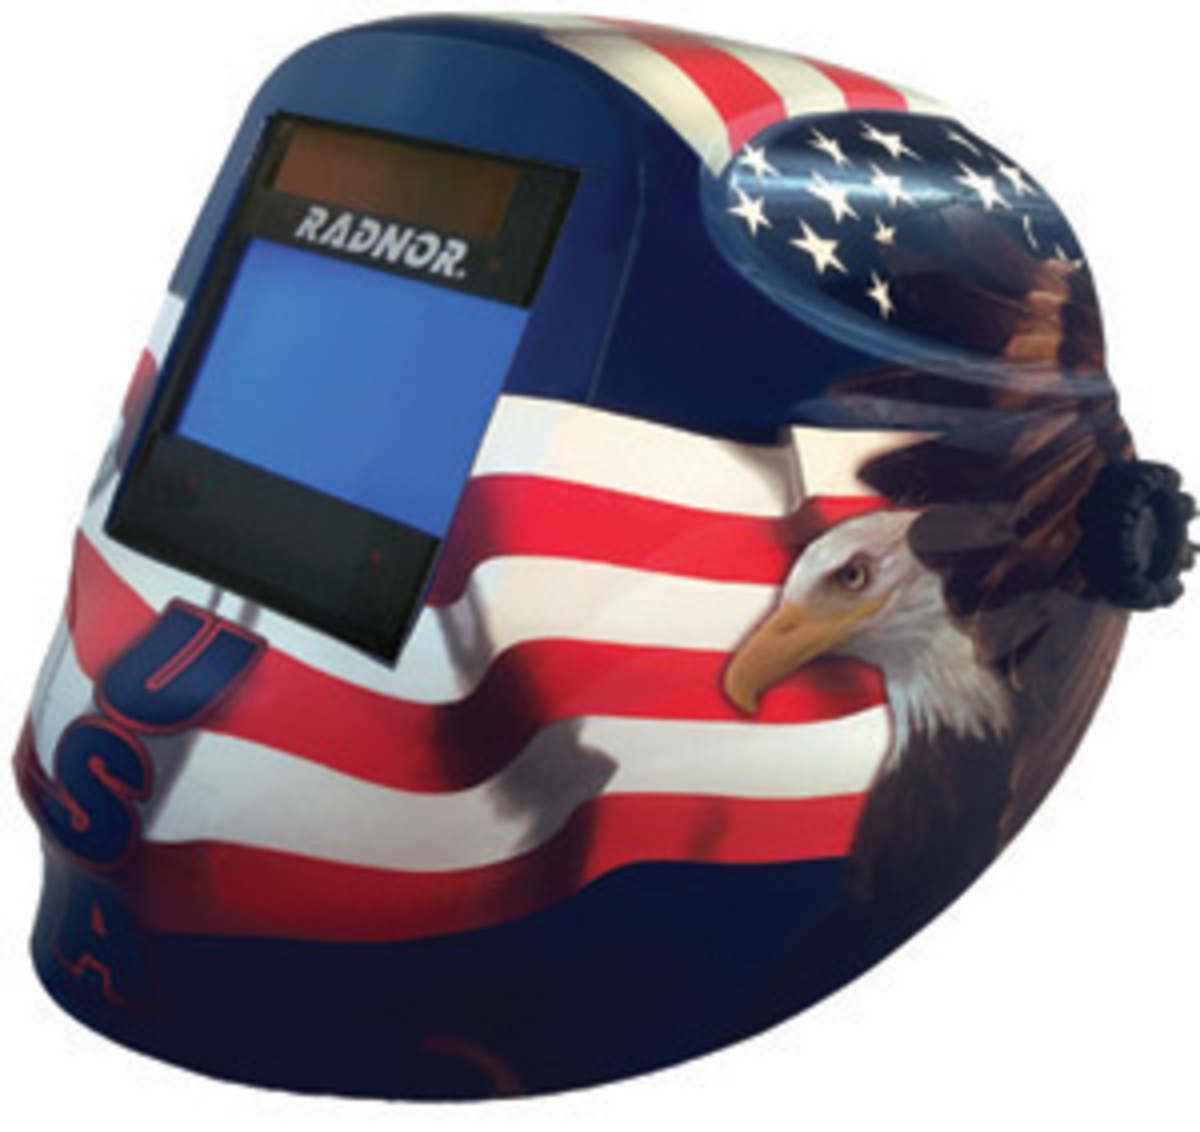 RADNOR® RDX60 Blue/Red/White Welding Helmet With 5